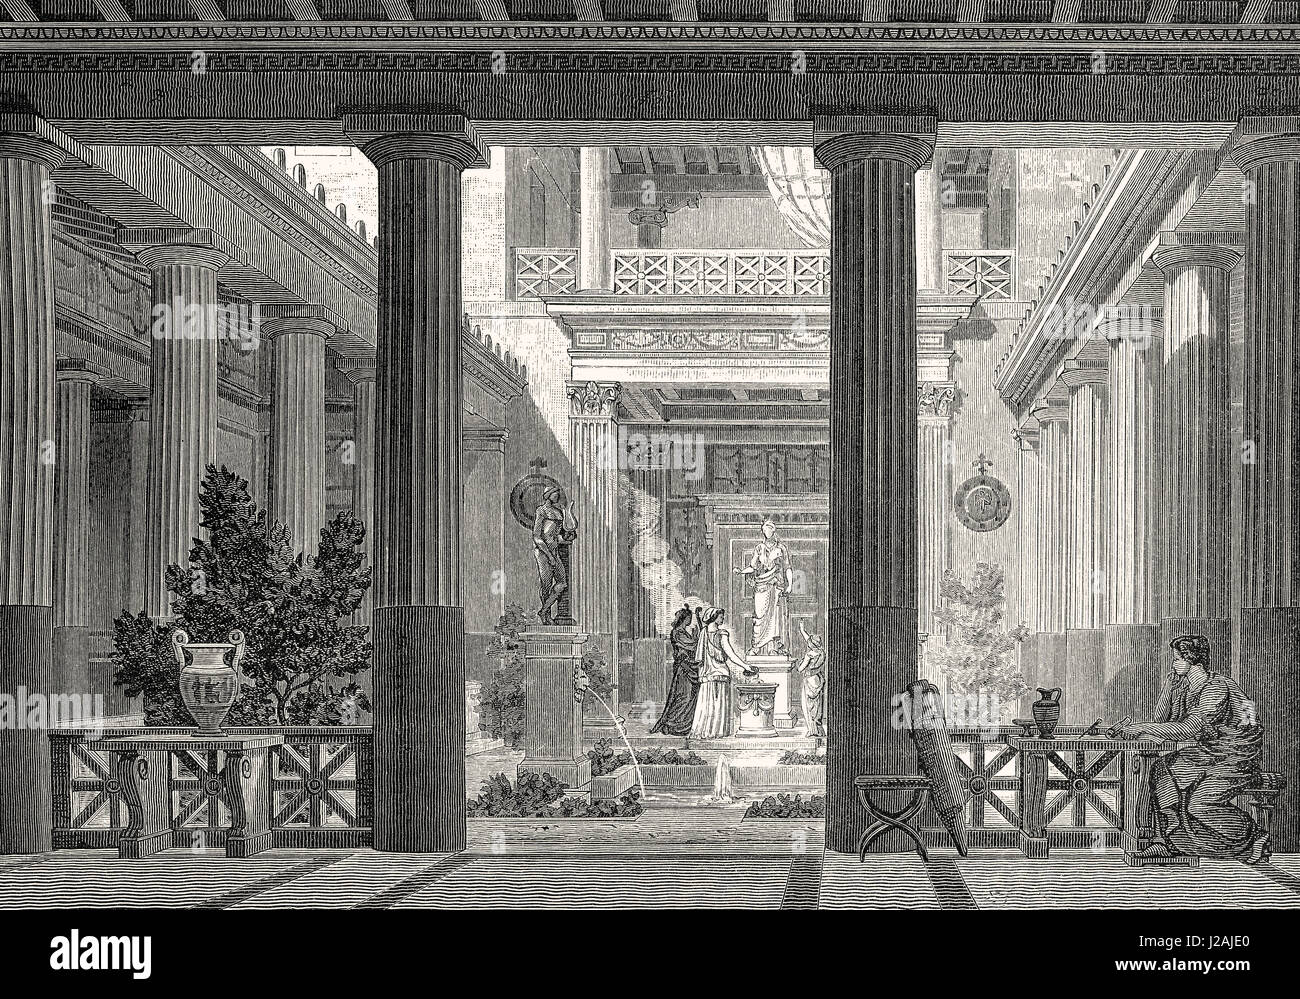 Eine antike griechische Prostas Haus, offener Hof mit einer Statue der Hestia, die Göttin des Herdes, Architektur und Familie Stockfoto